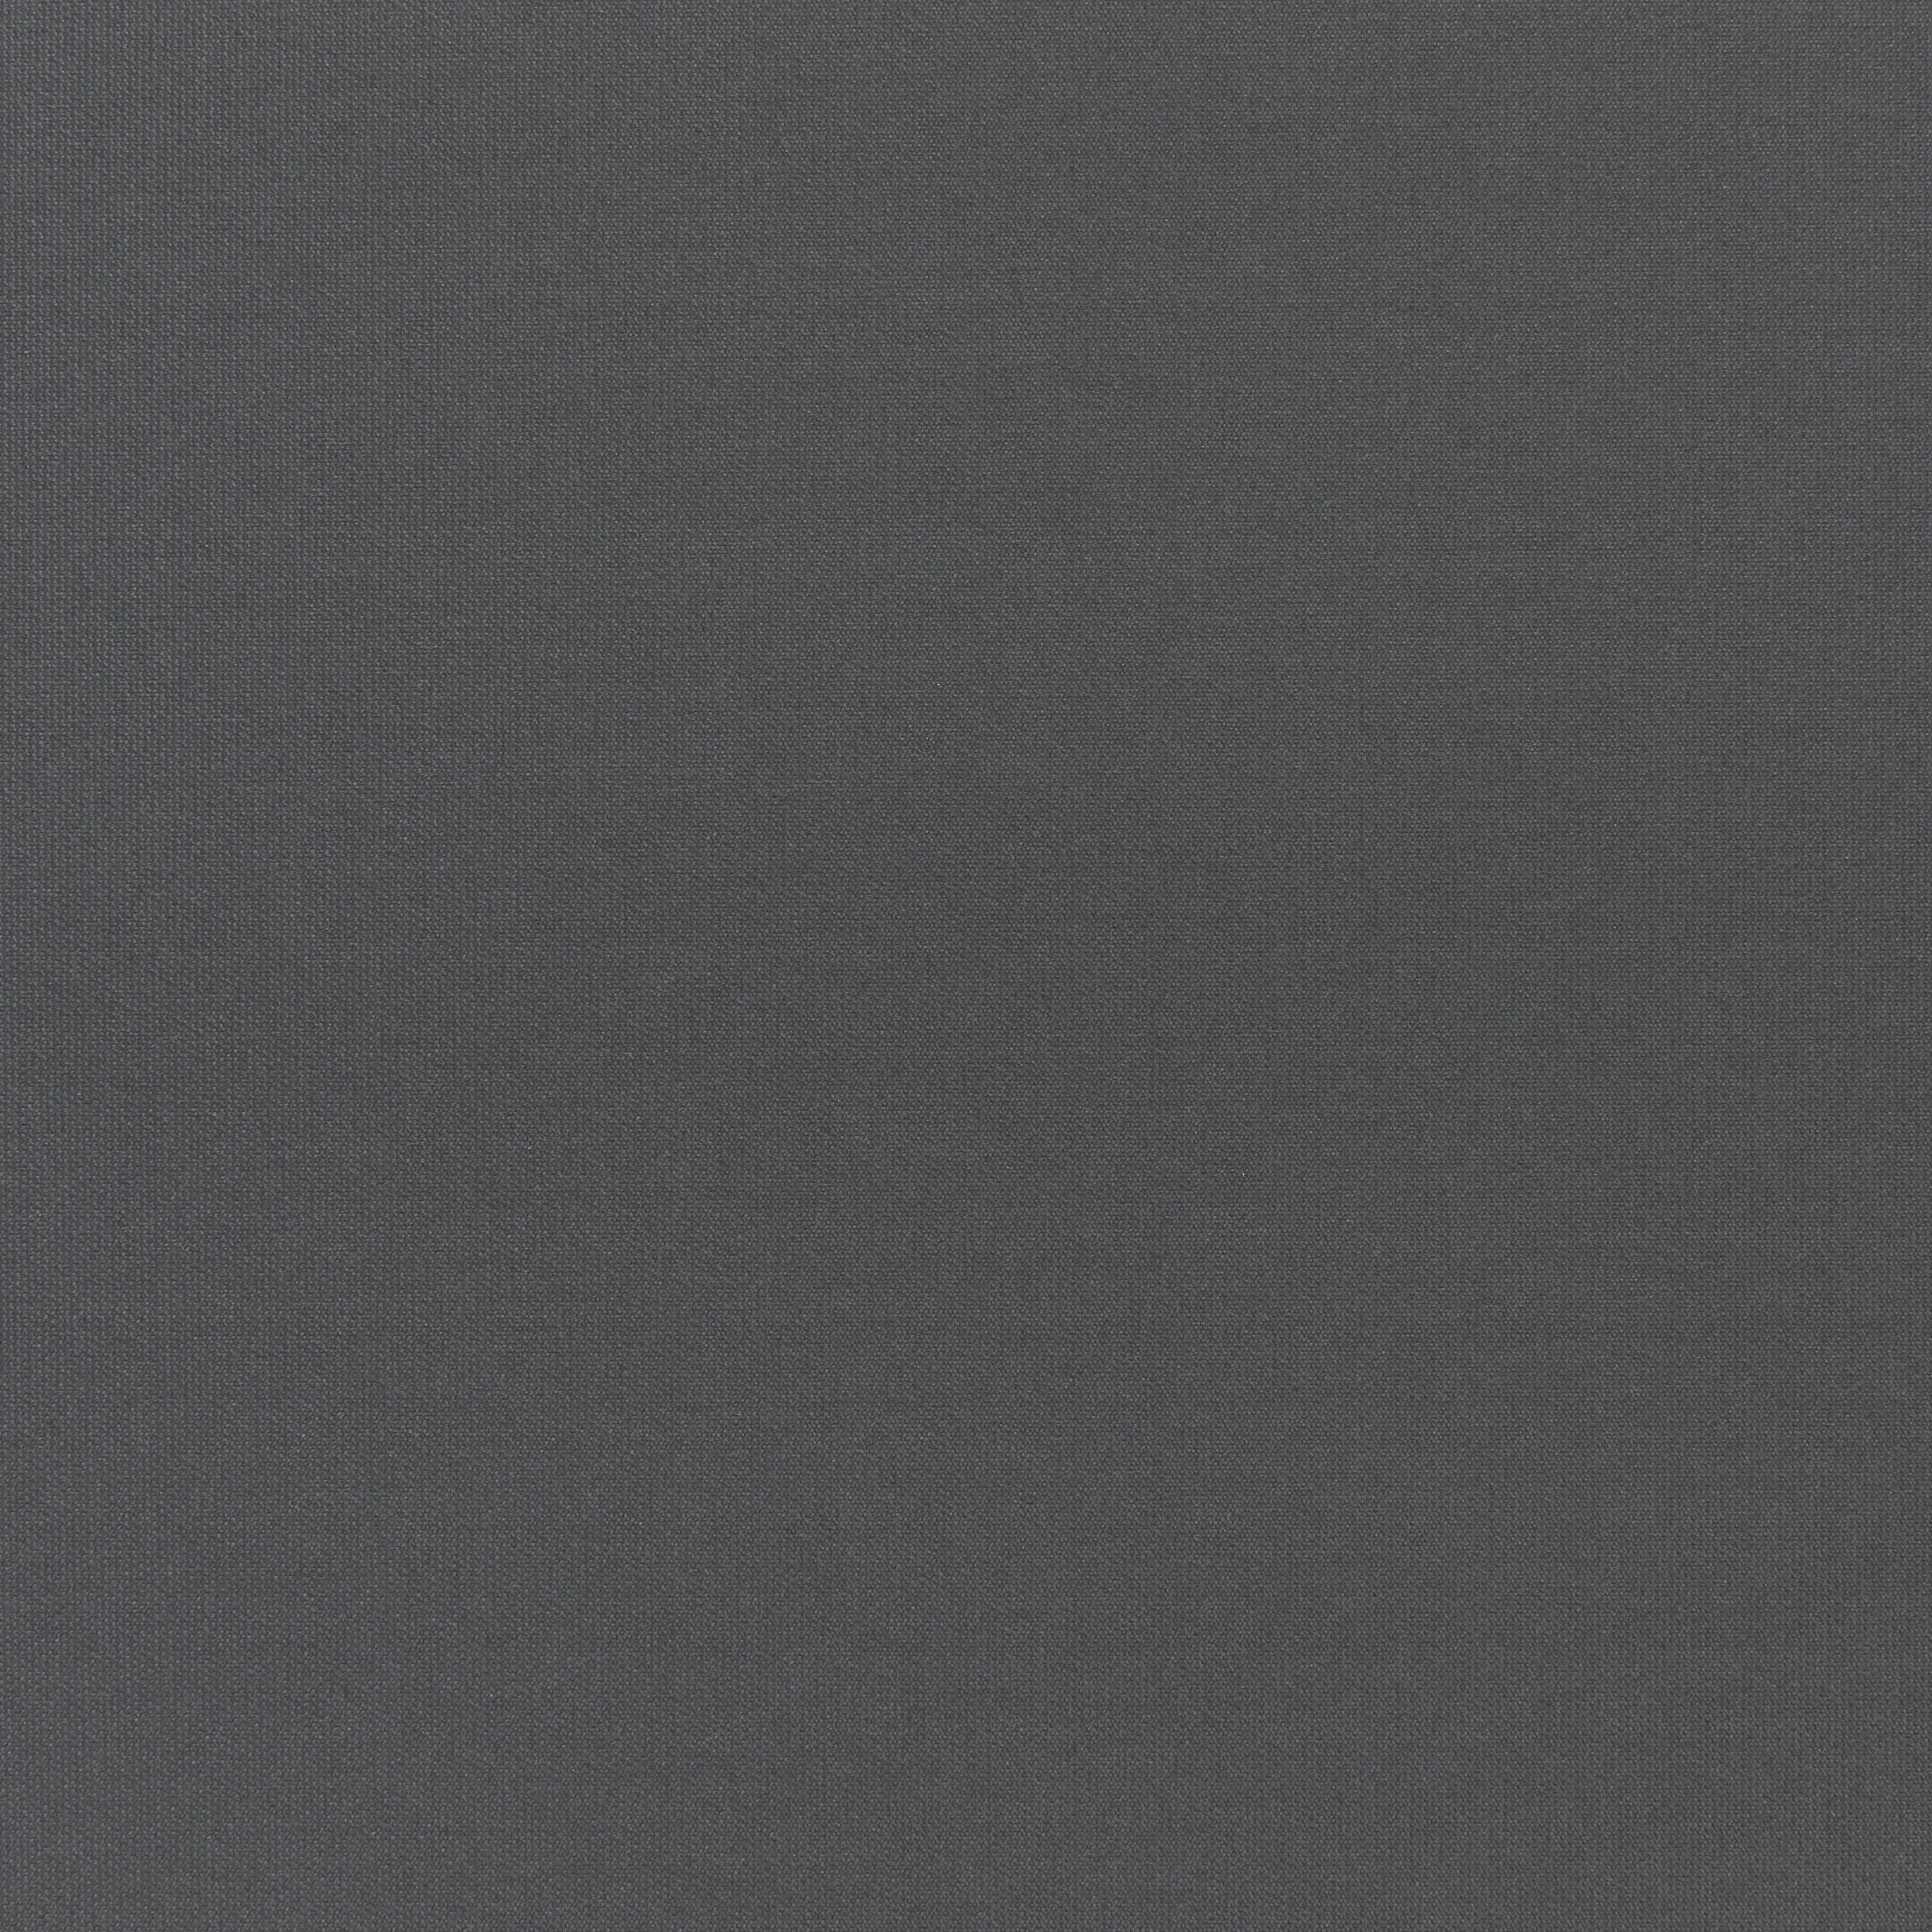 Tenda a rullo oscurante INSPIRE Tokyo grigio scuro 60 x 250 cm - 4